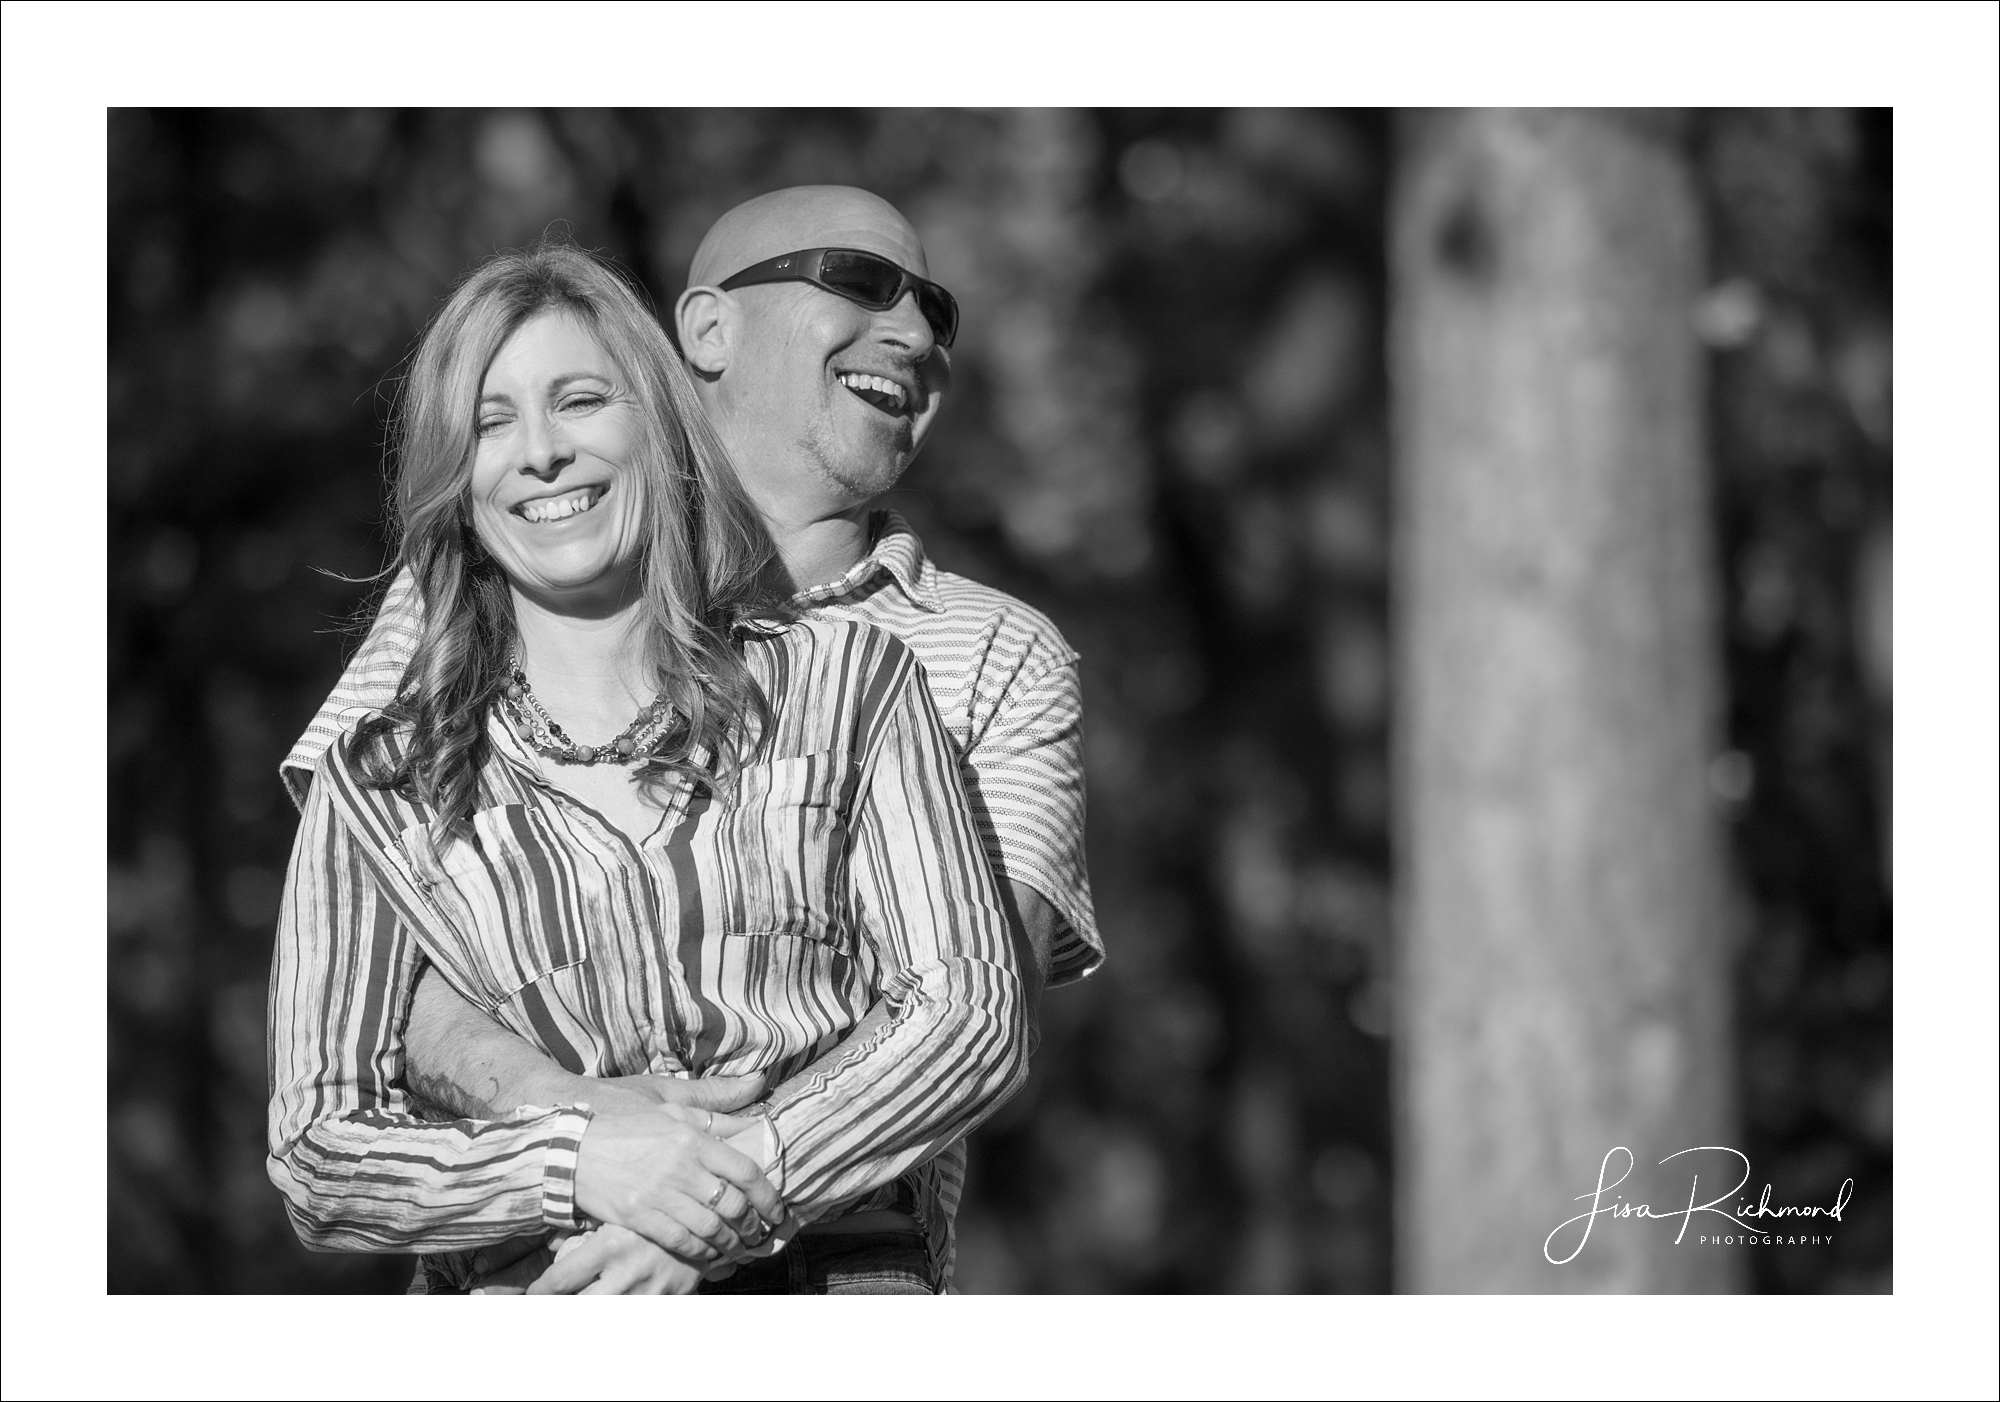 Donna and Robert <br> Engagement session at Alder Creek